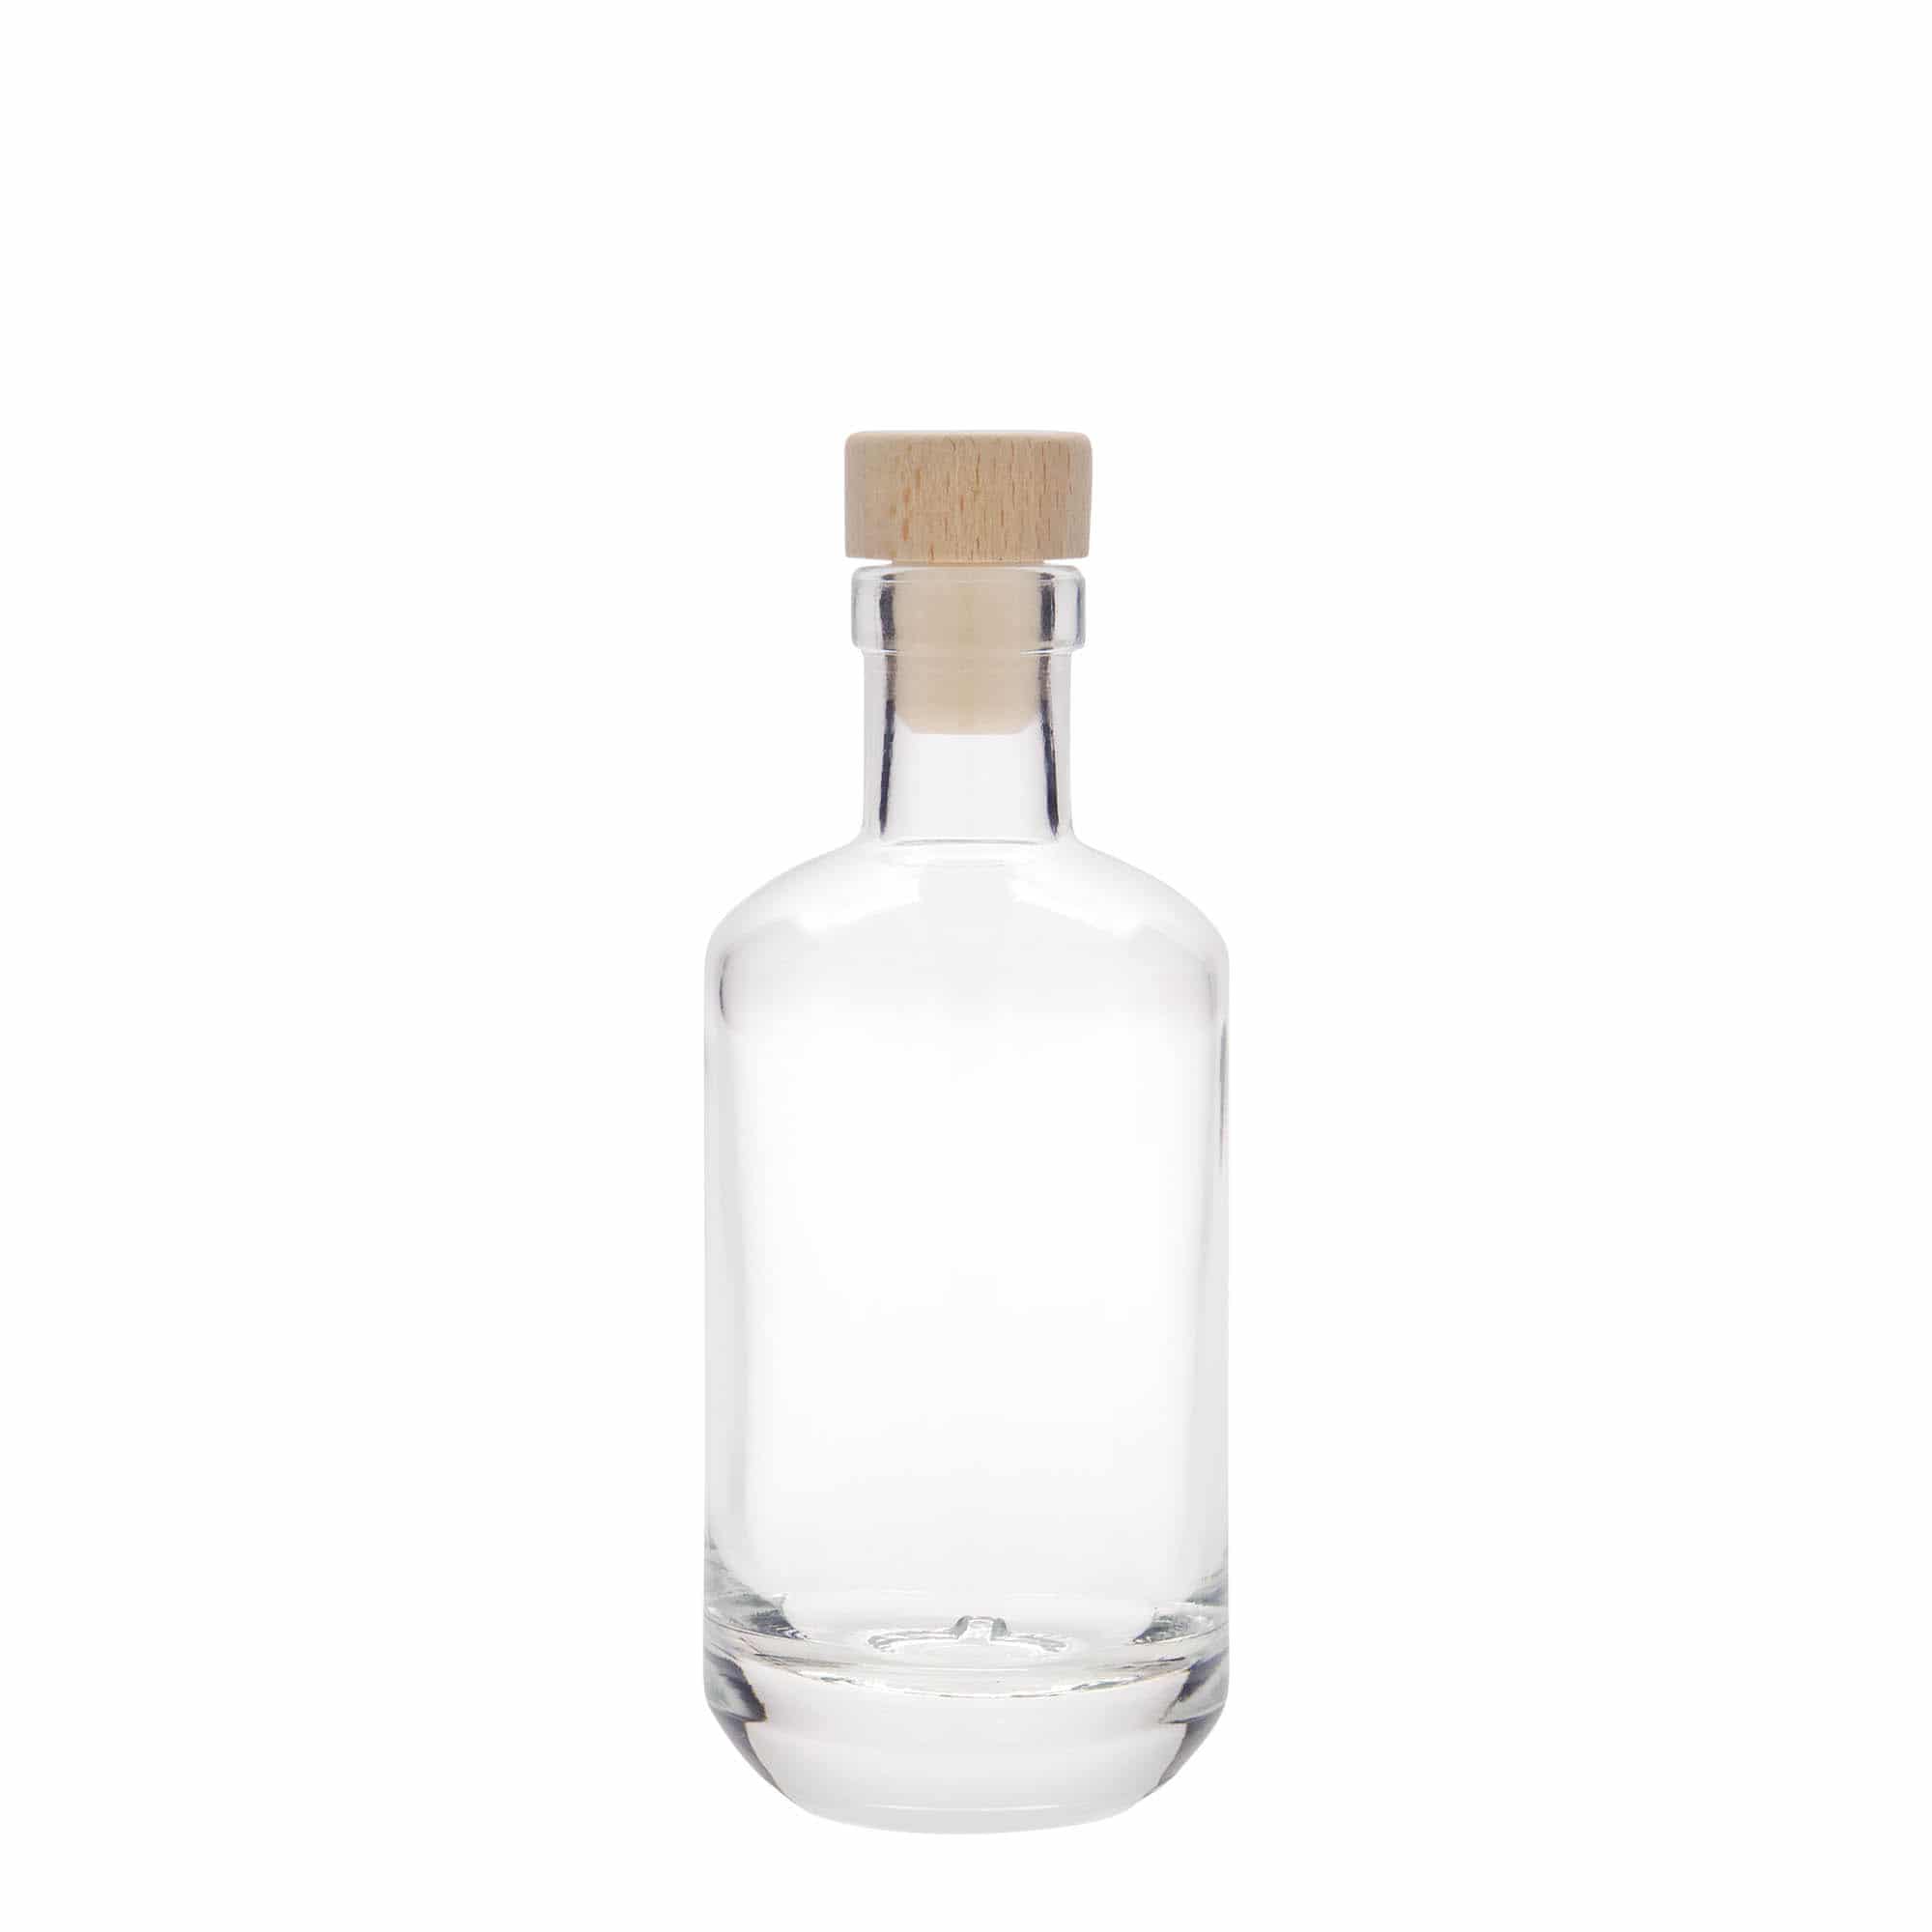 200 ml glass bottle 'Vienna', closure: cork